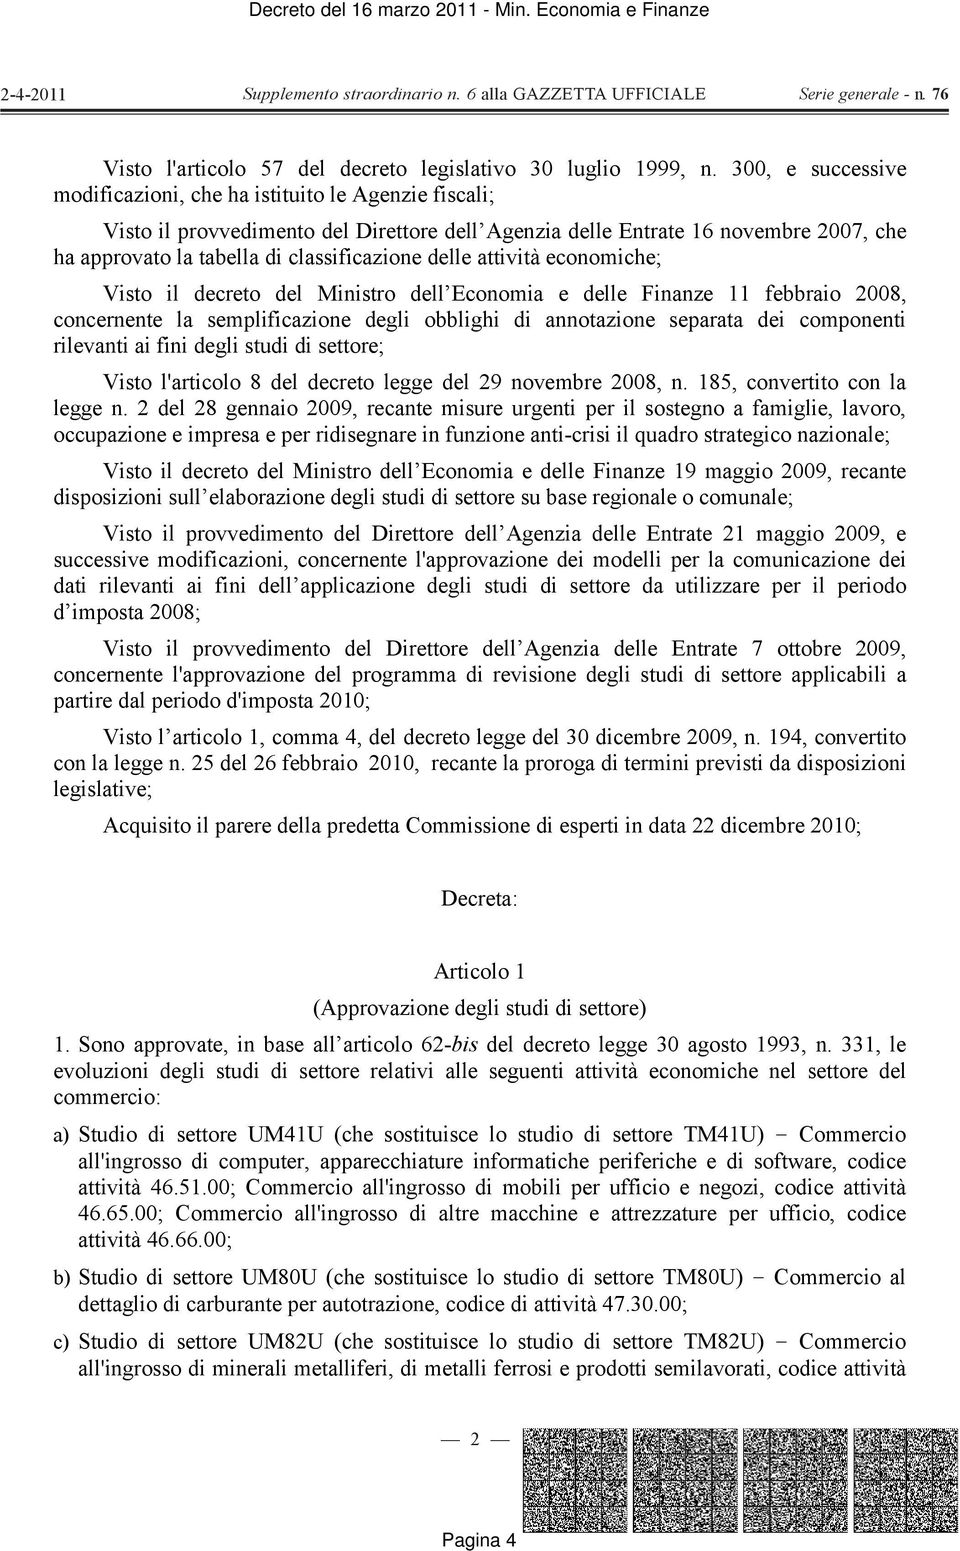 delle attività economiche; Visto il decreto del Ministro dell Economia e delle Finanze 11 febbraio 2008, concernente la semplificazione degli obblighi di annotazione separata dei componenti rilevanti